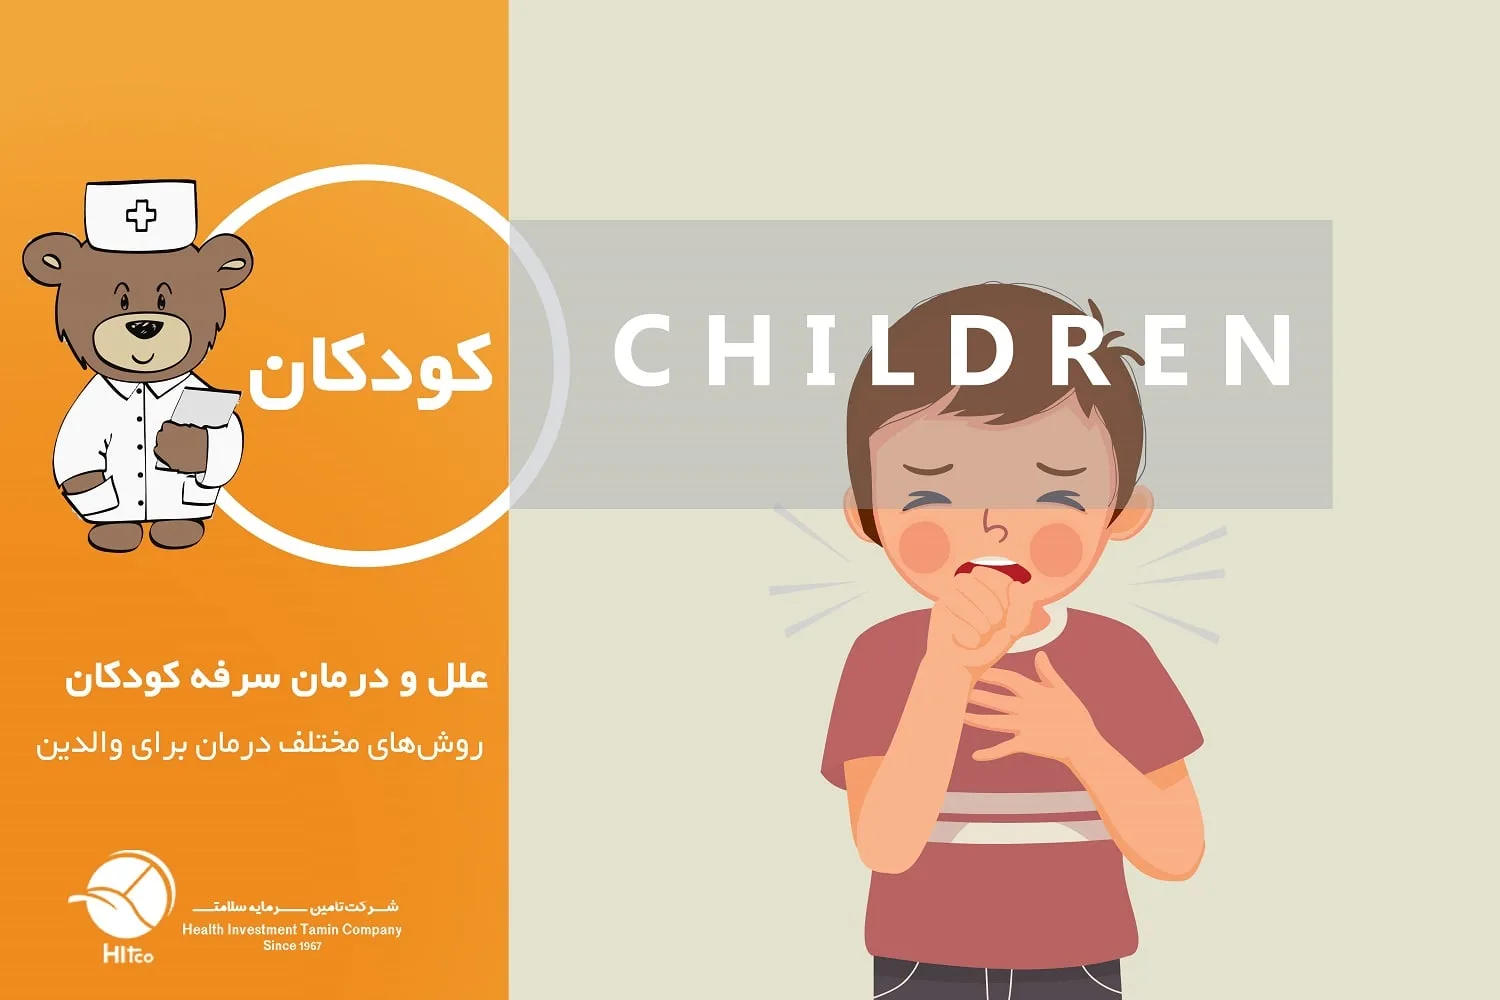 درمان سرفه کودکان